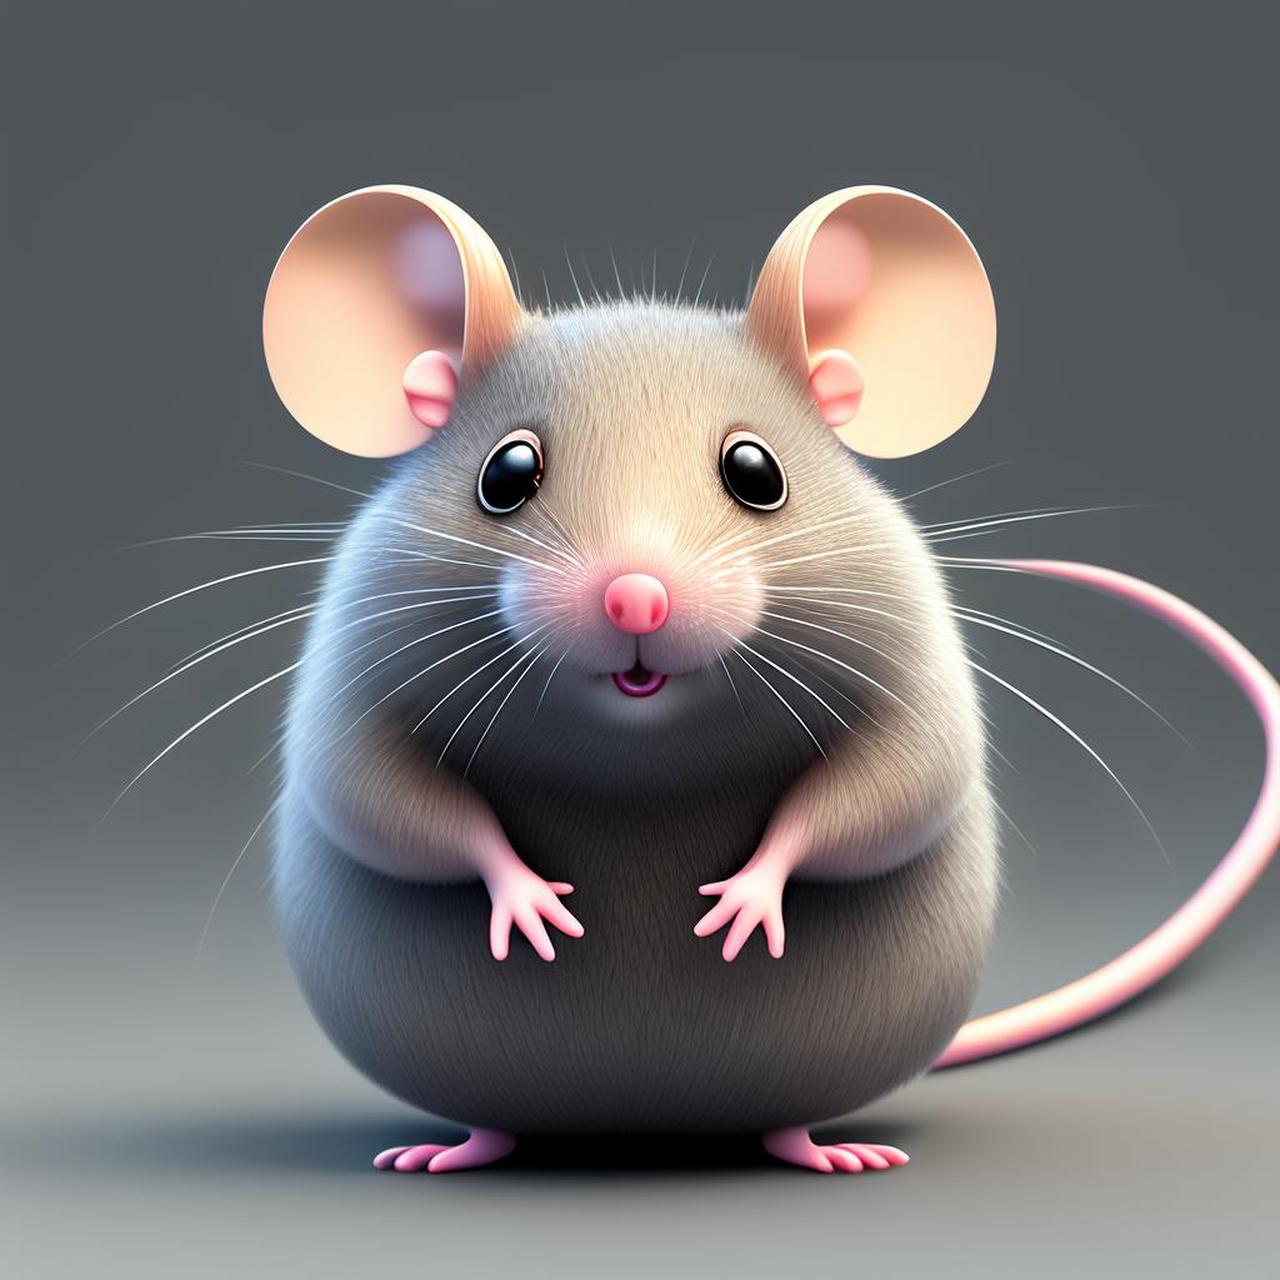 老鼠头像 微信 可爱图片